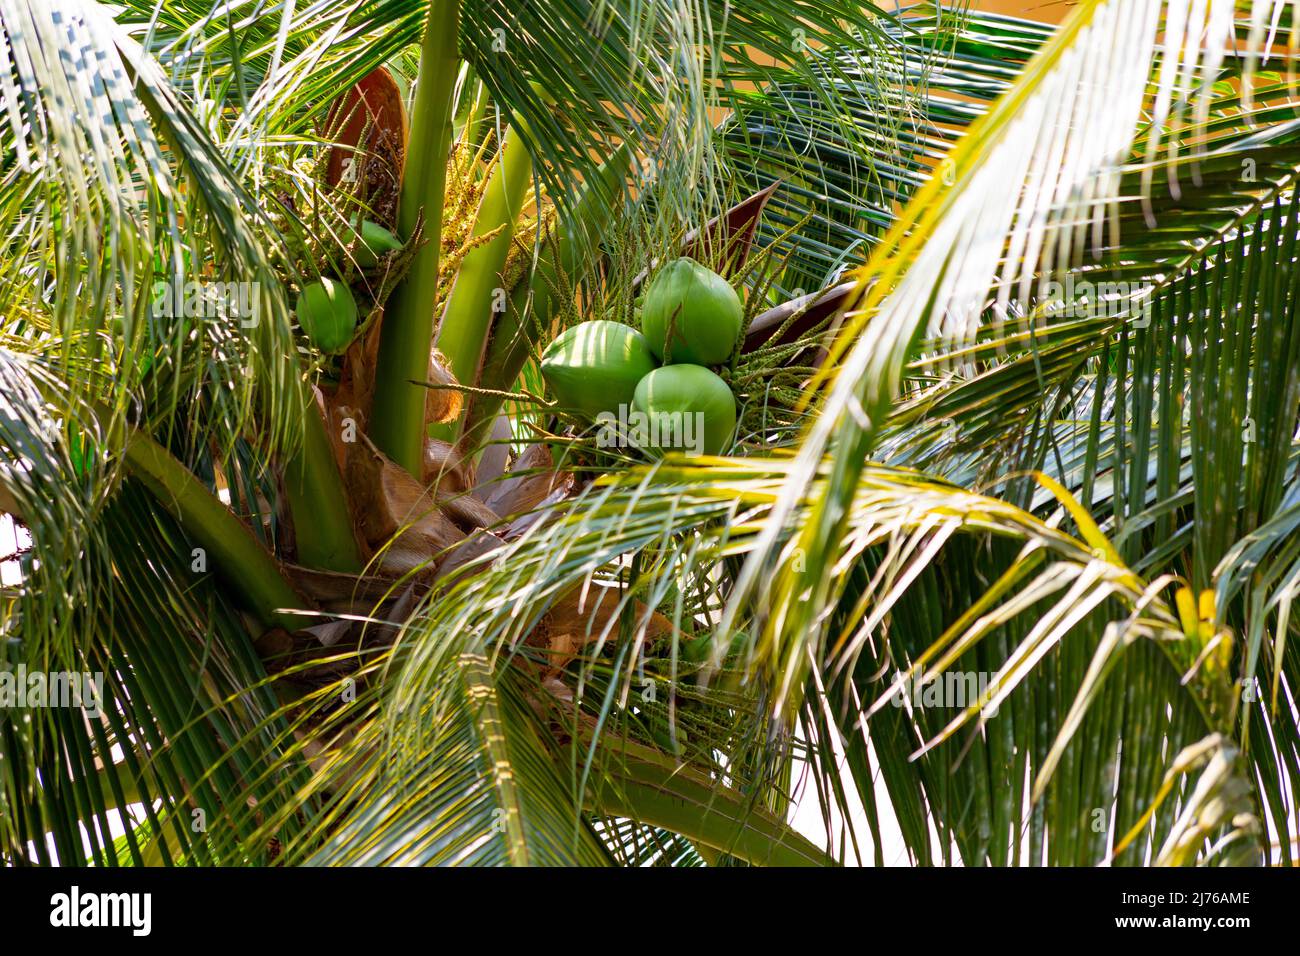 Noix de coco à la noix de coco, (Cocos nucifera), complexe hôtelier Dusit Thani, Hua Hin, province de Prachuap Khiri Khan, Thaïlande, Golfe de Thaïlande, Asie Banque D'Images